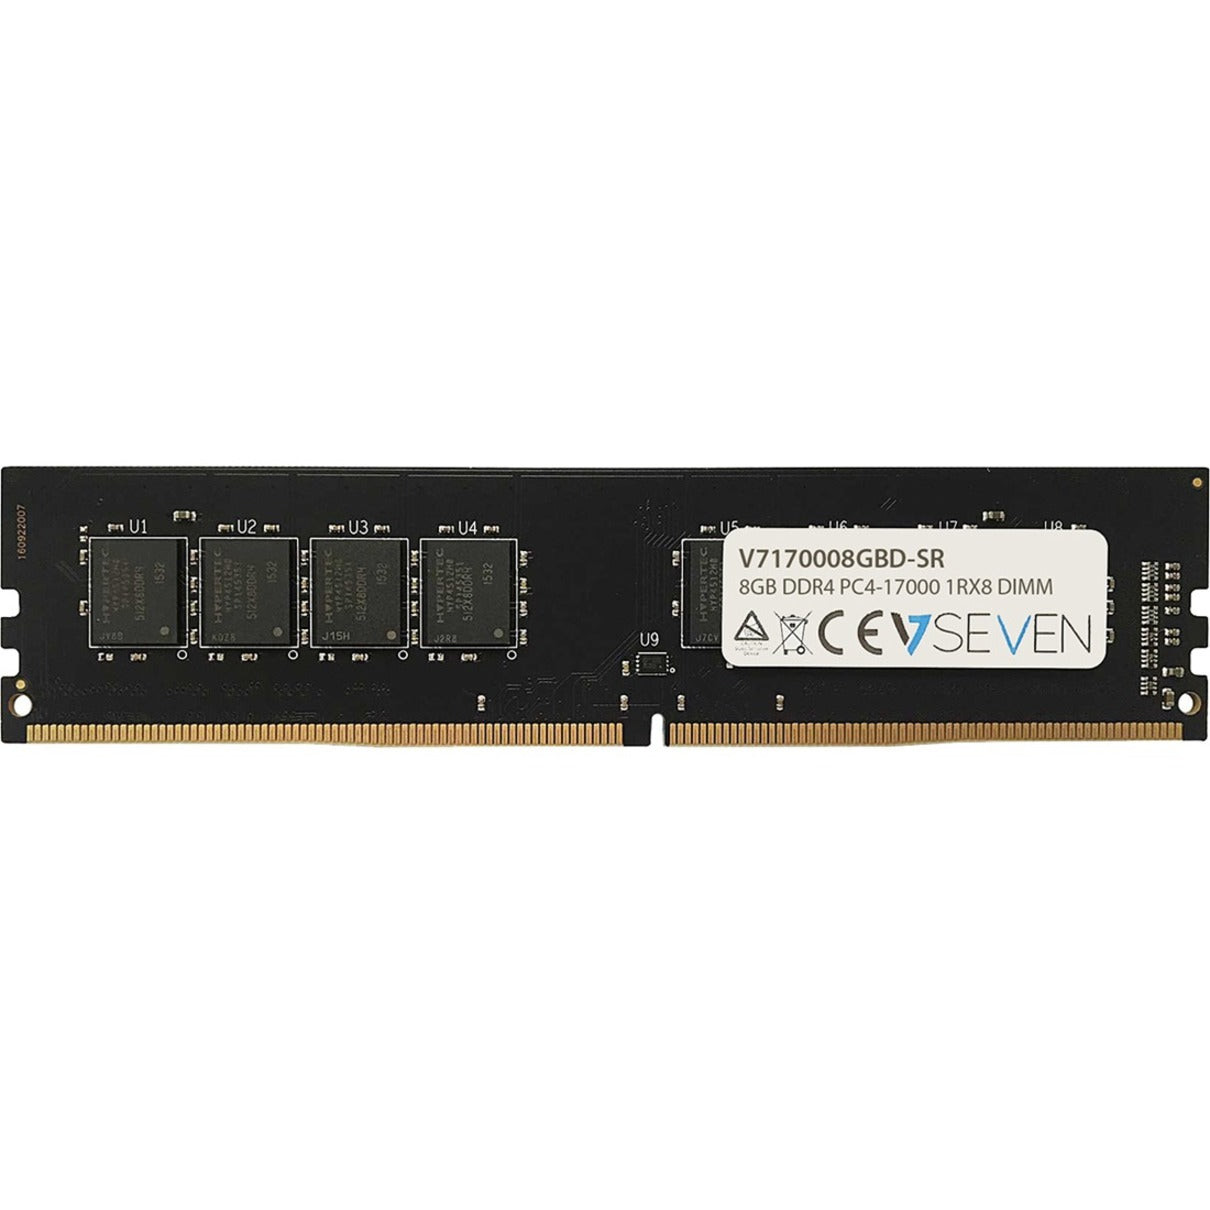 V7 V7170008GBD-SR 8GB DDR4 SDRAM Memory Module, High Performance RAM for Desktop PC